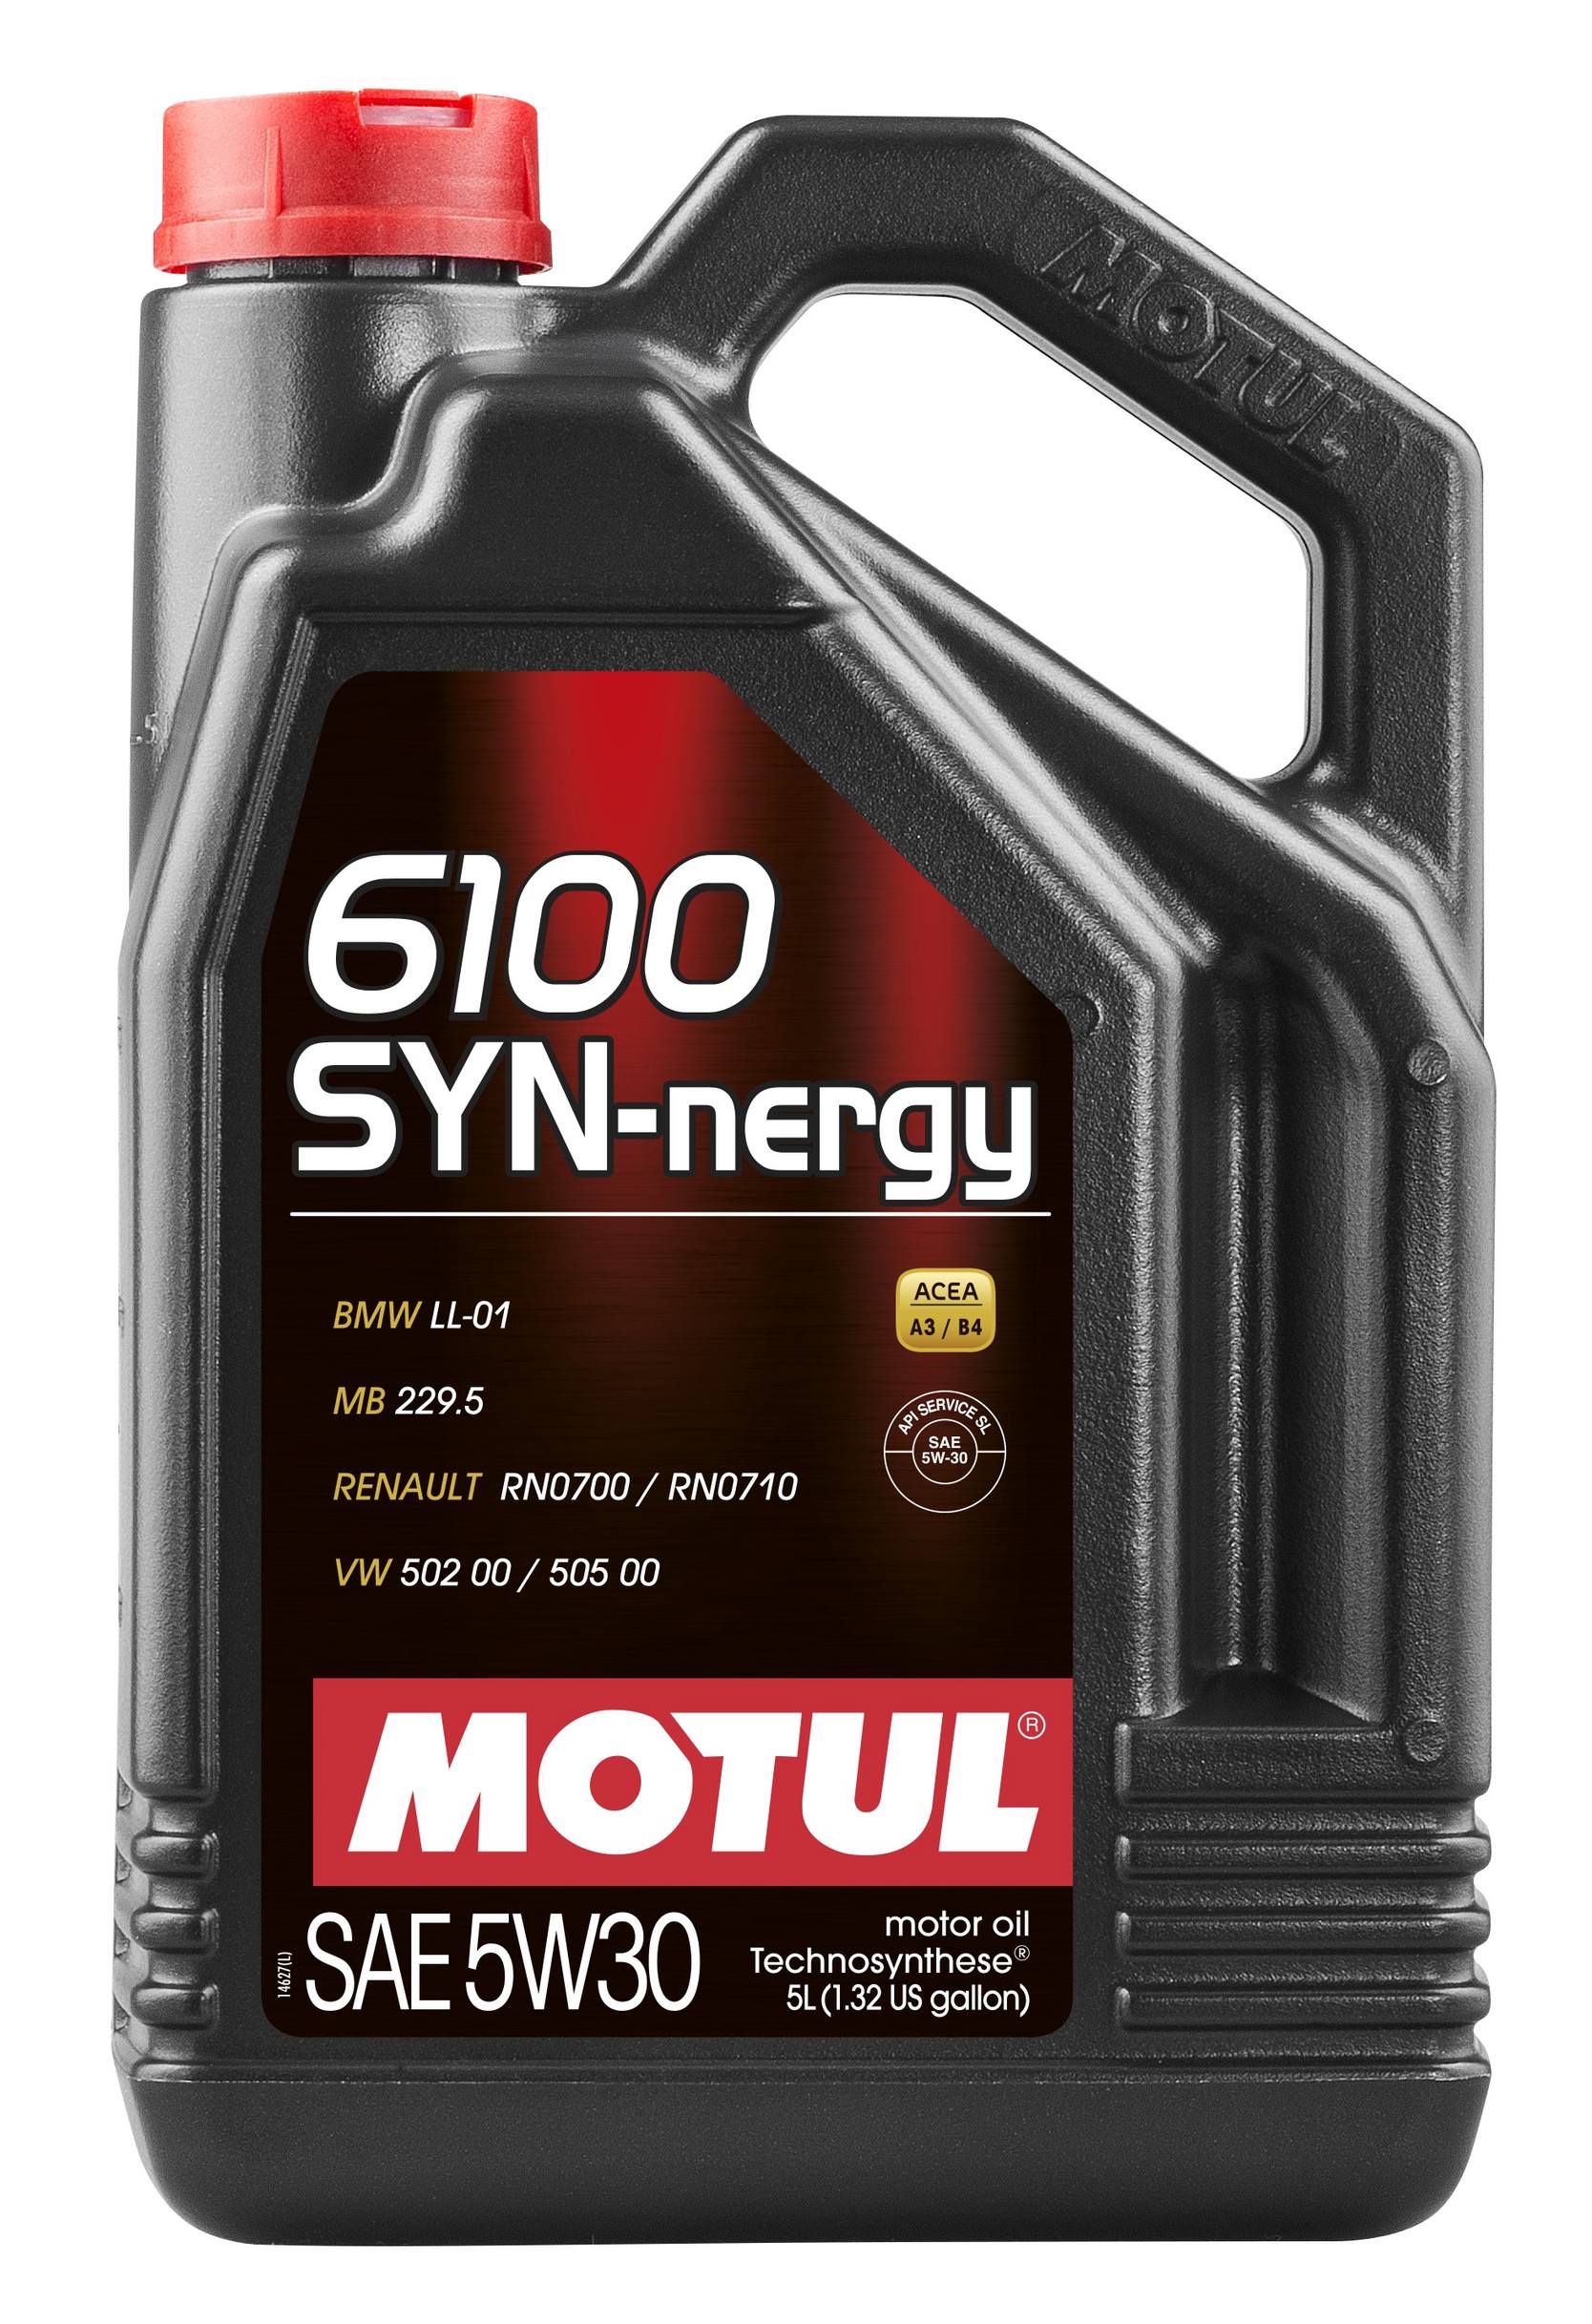 6100 SYN-NERGY 5W-30 Motor Oil